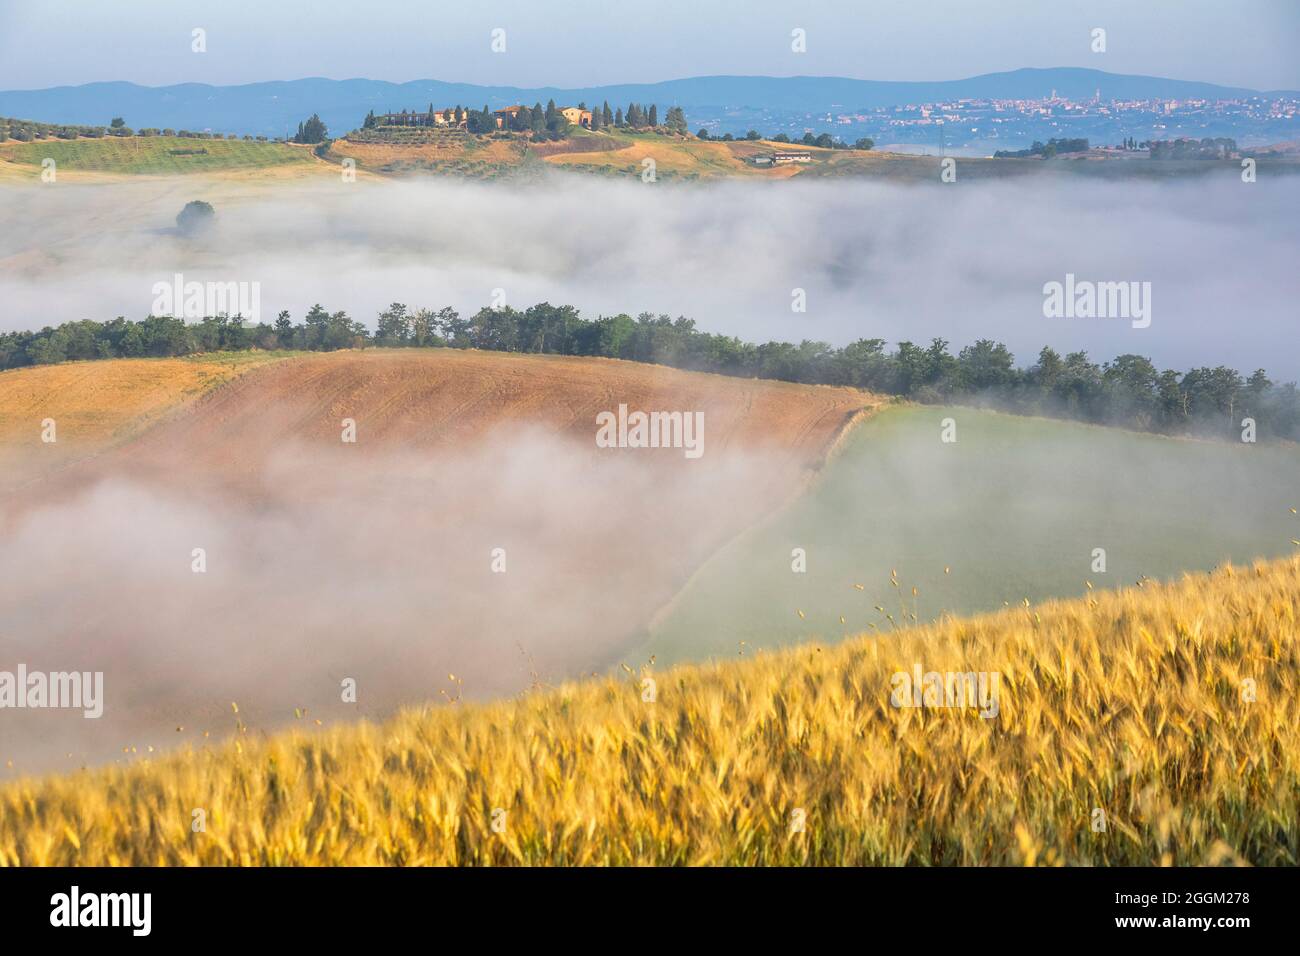 Typische toskanische Landschaft, morgens mit Nebel in den Tälern und sanften Hügeln der Crete Senesi, asciano, Provinz siena, toskana, italien Stockfoto